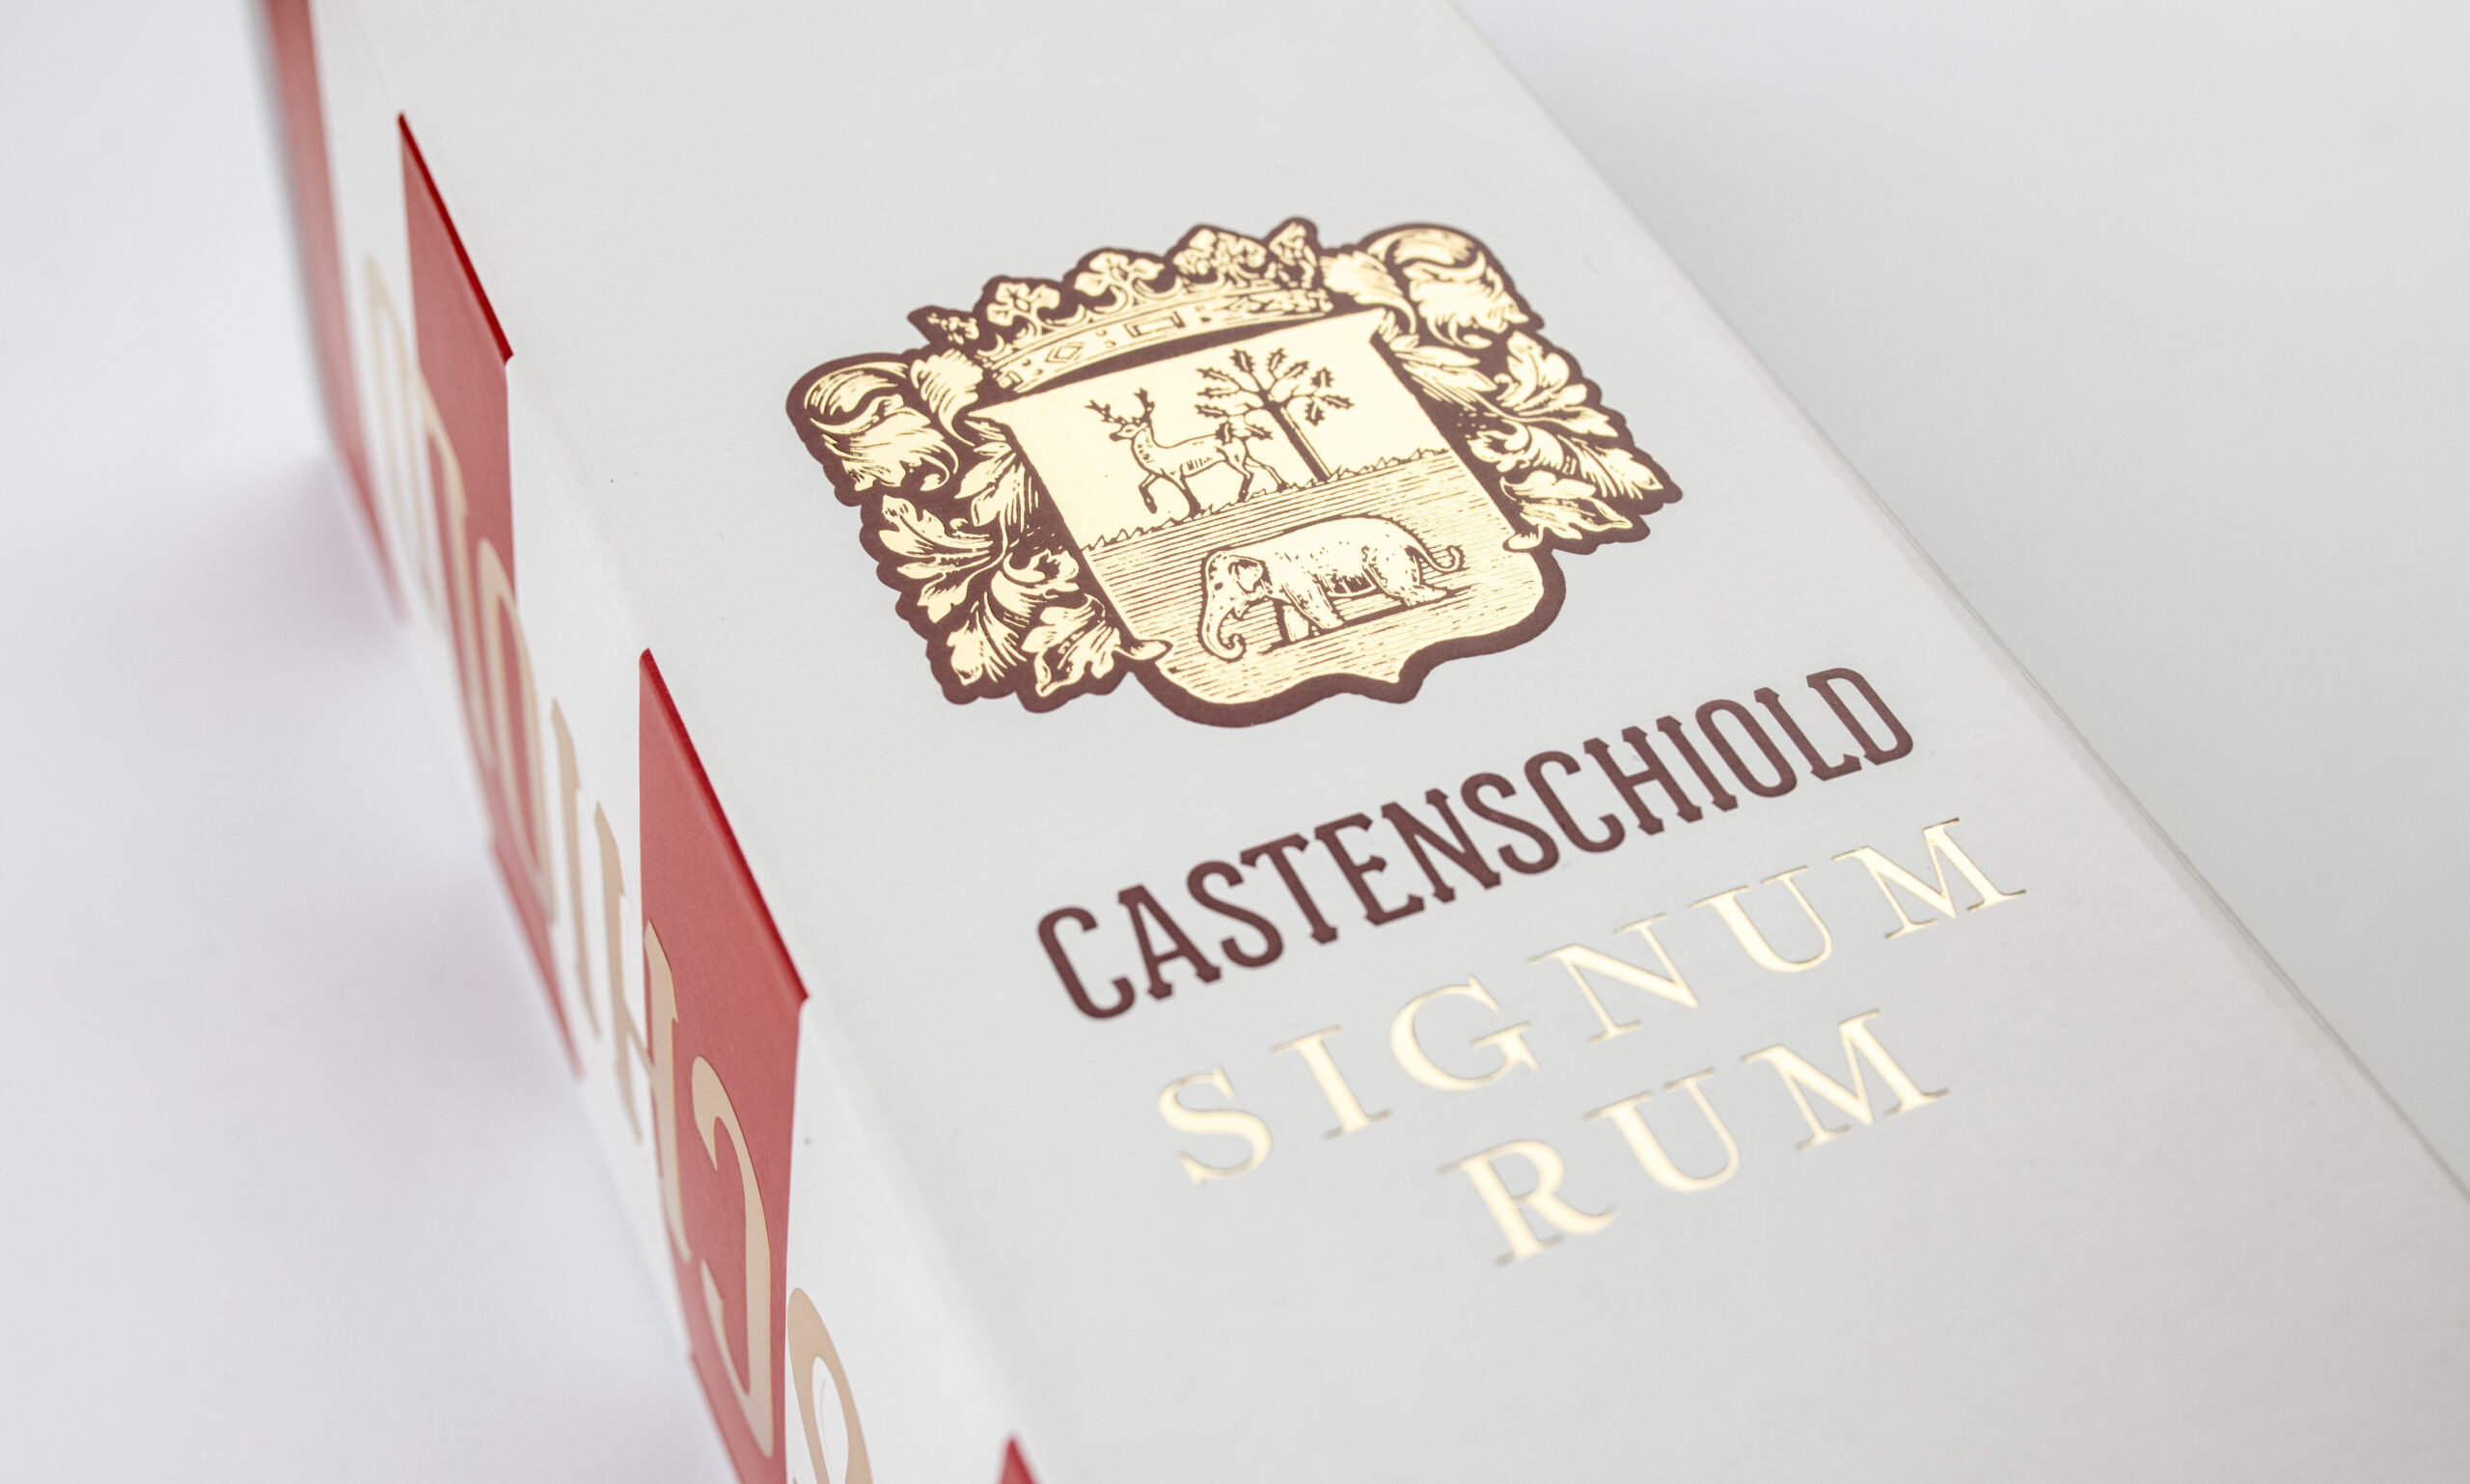 Castenschiold Signum Rum